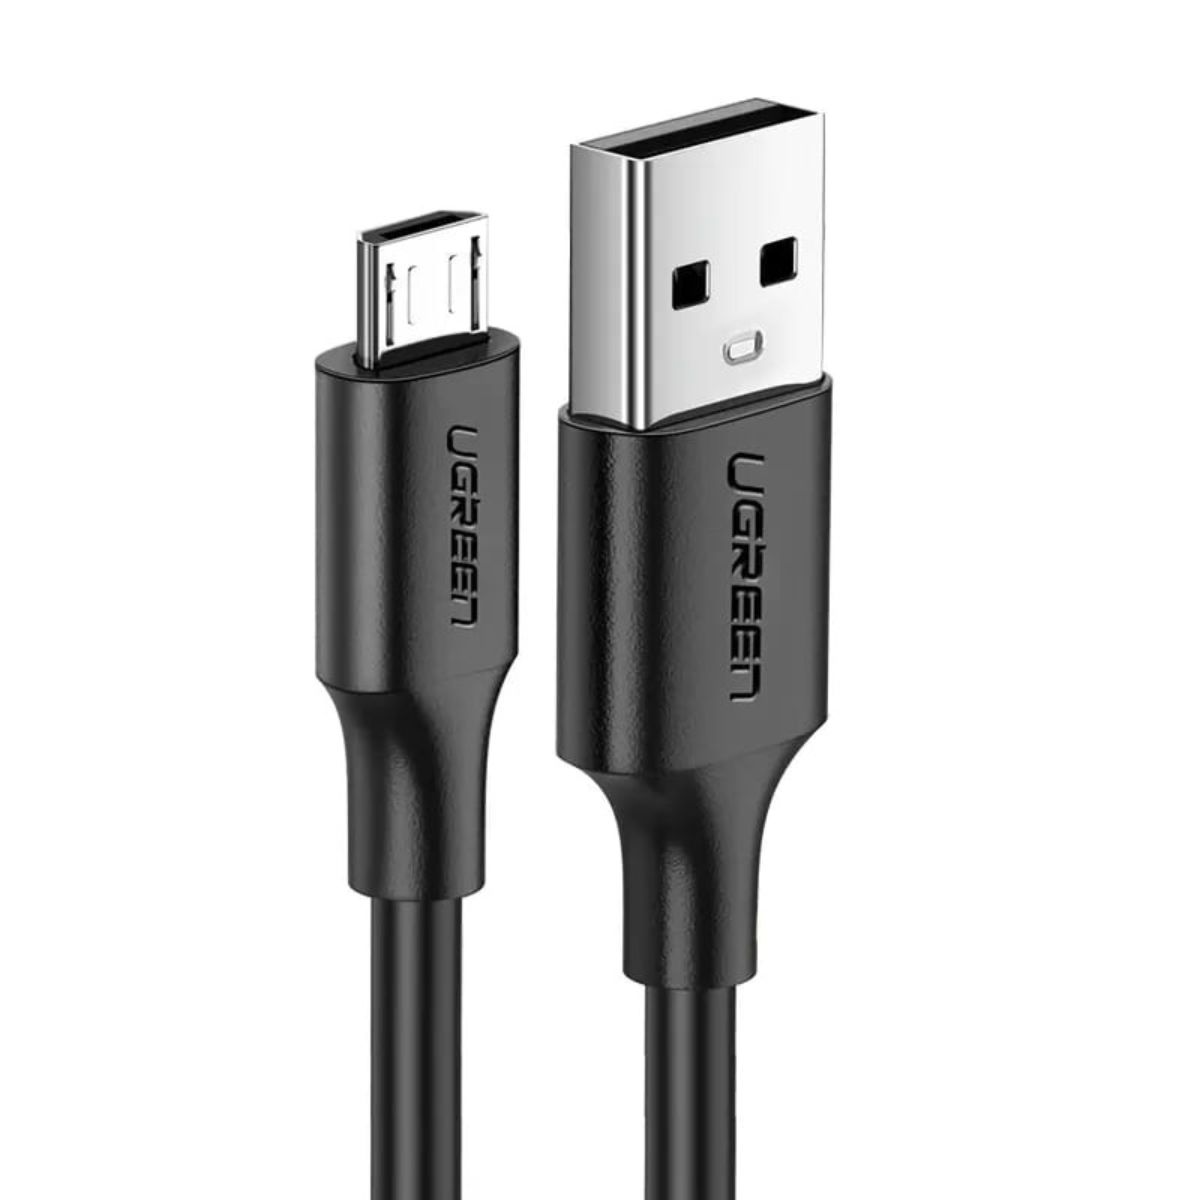 Cáp sạc 3m USB 2.0 Male to Micro USB Ugreen 60827 US289 màu đen, sạc nhanh lên tới 2A